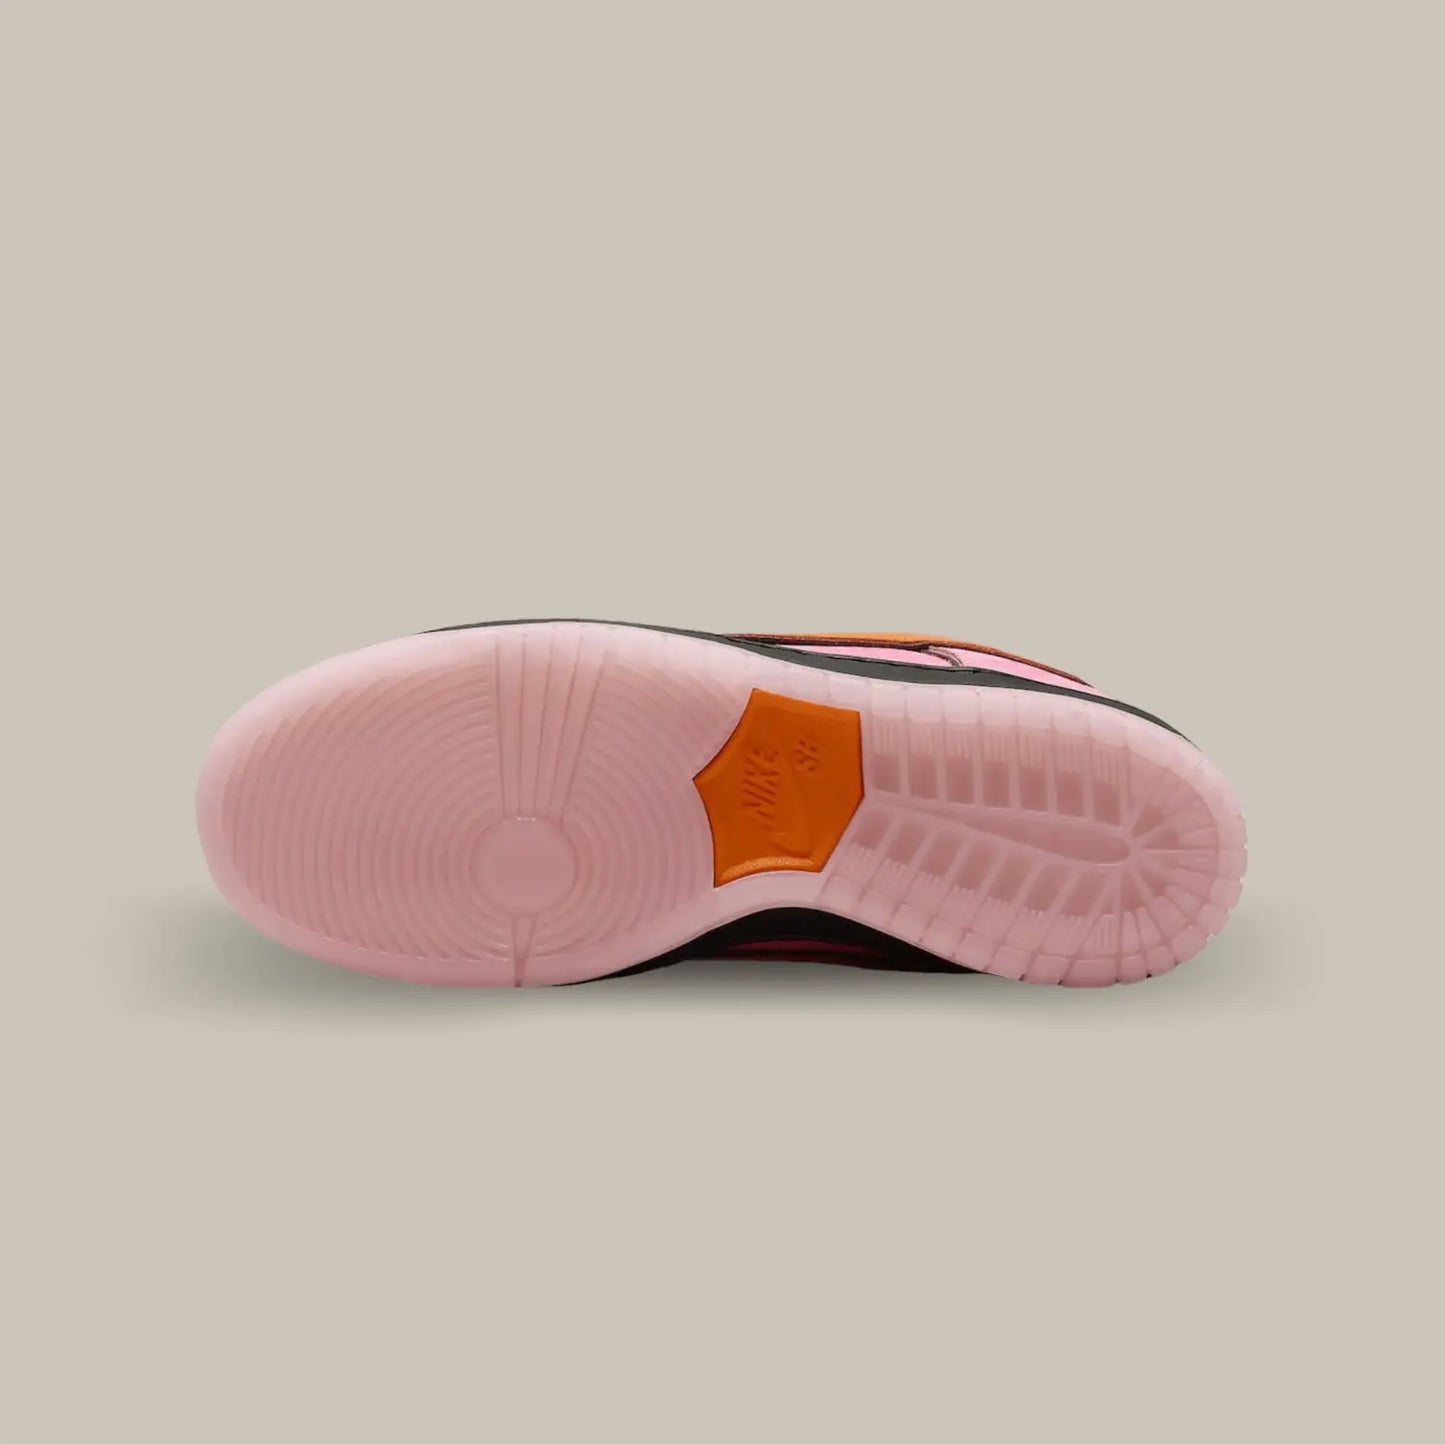 La semelle de la  Nike SB Dunk Low The powerpuff Blossom de couleur rose avec l'empiècement central orange.